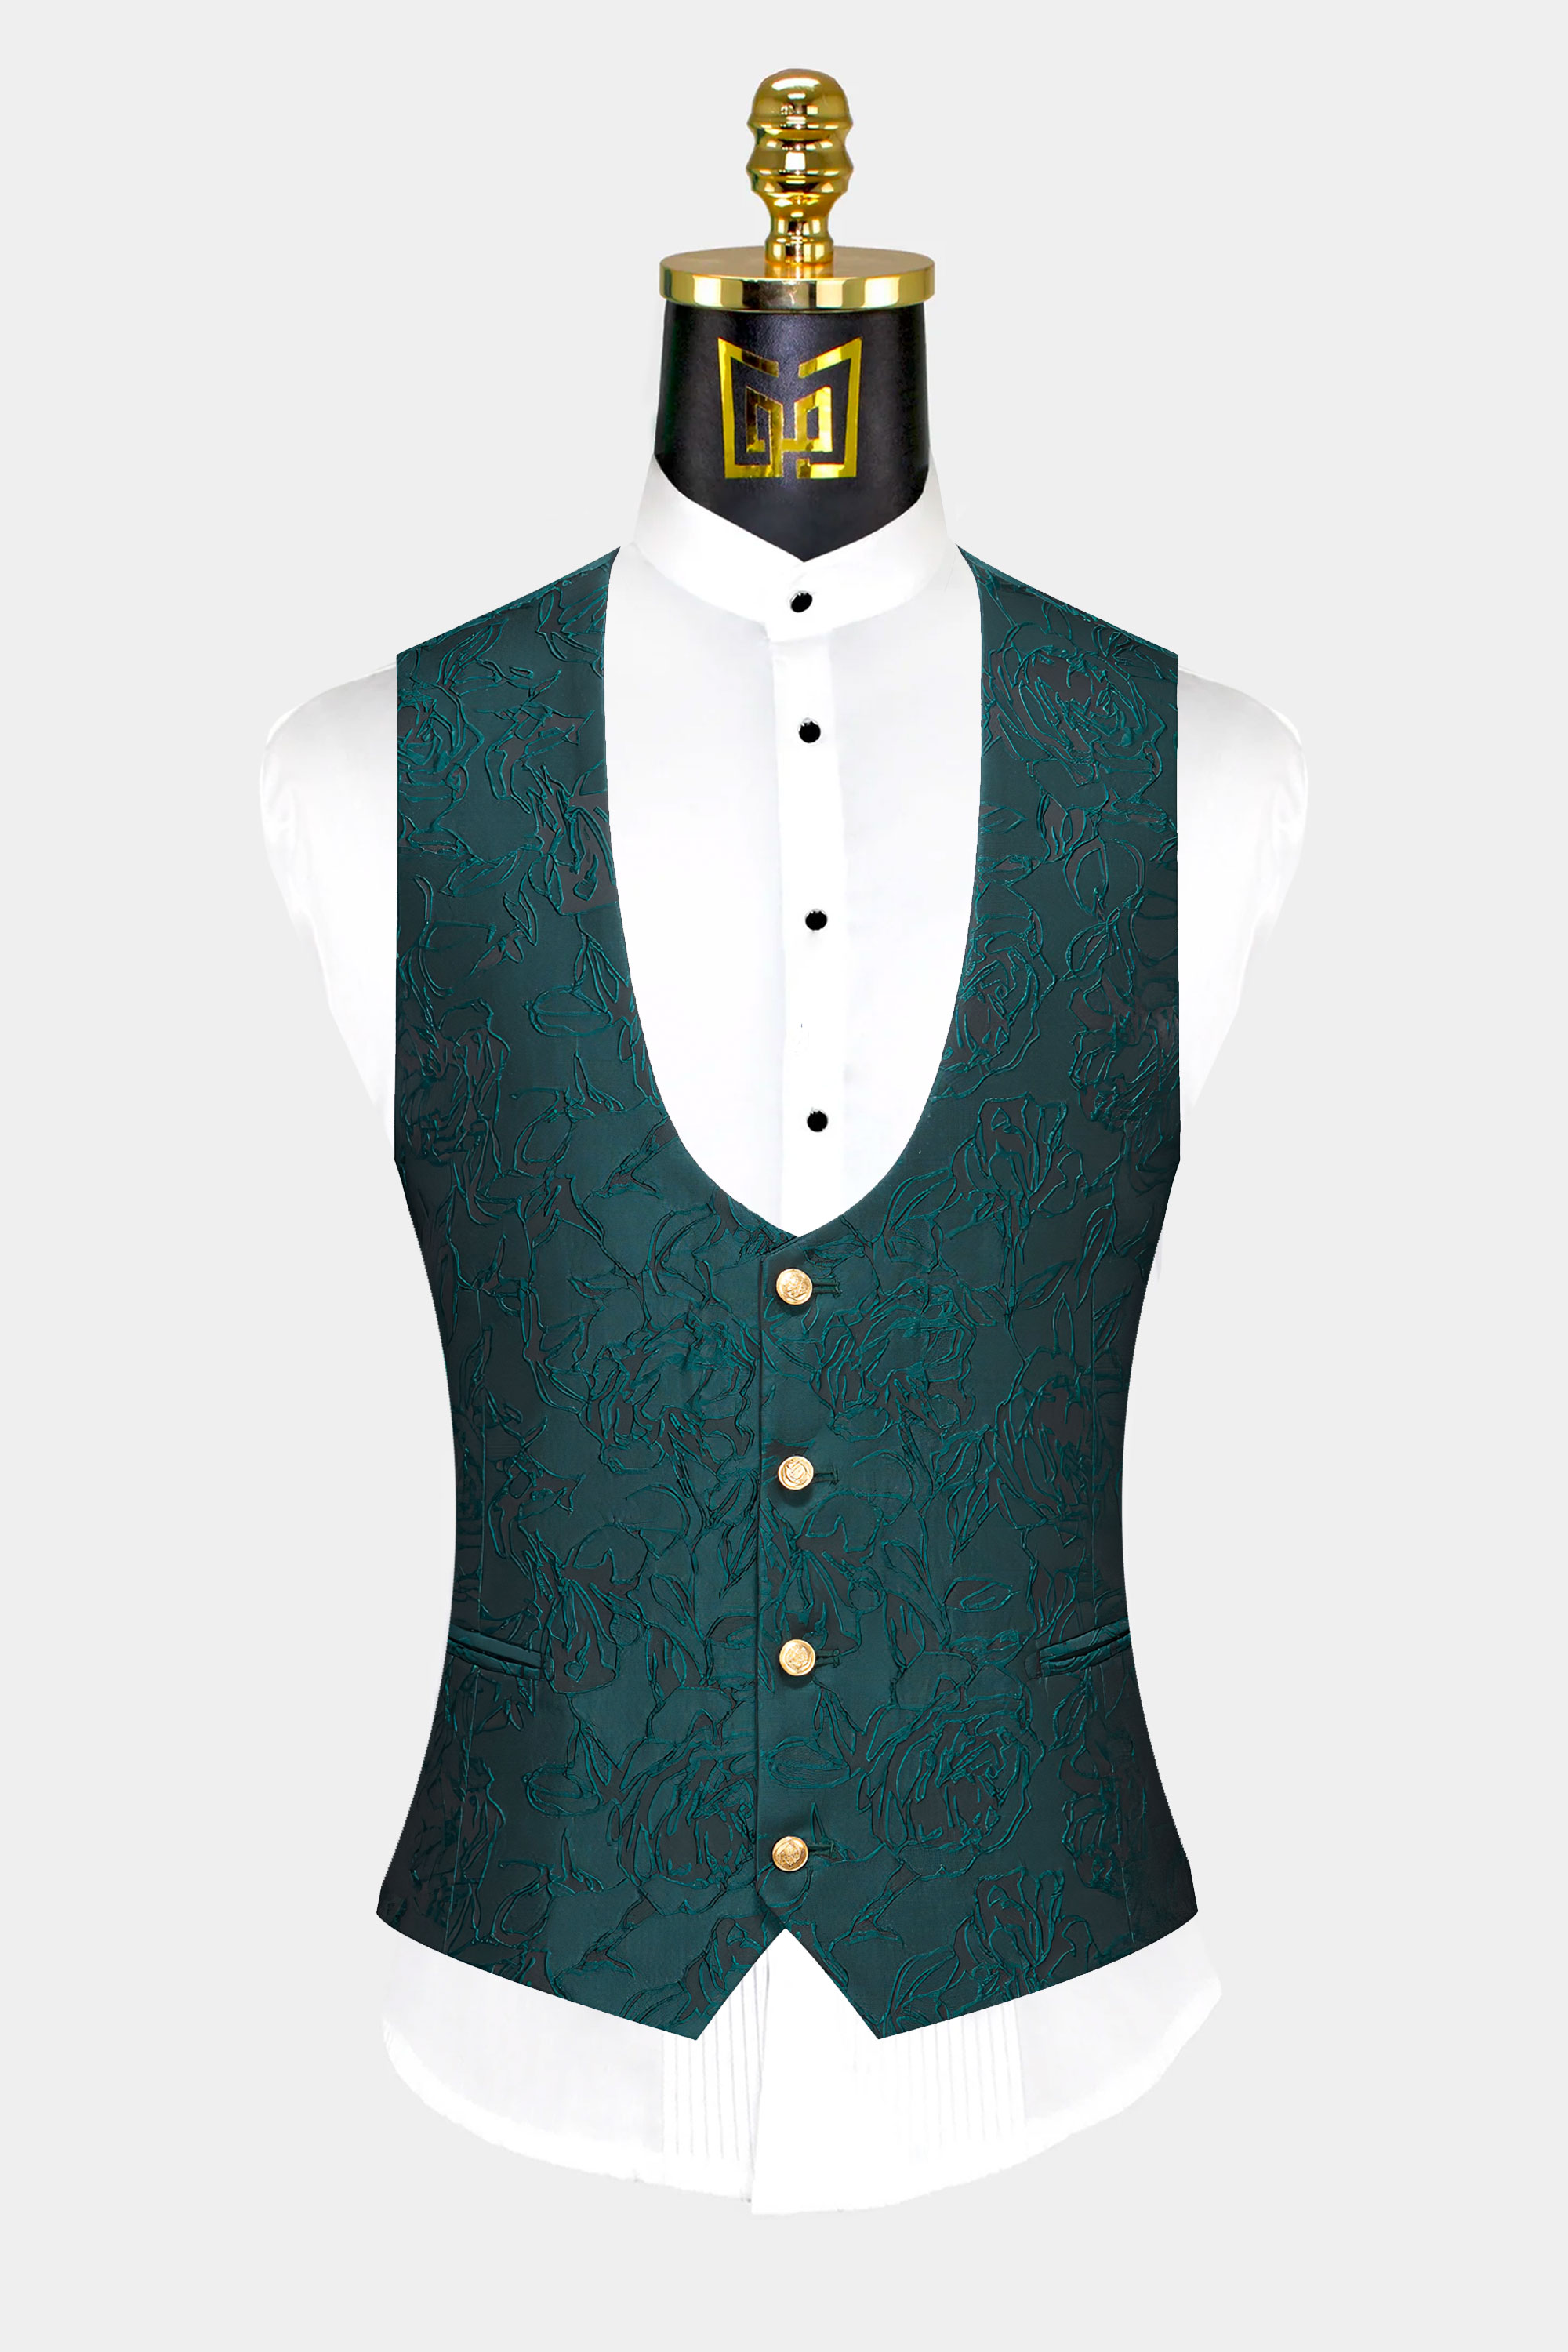 Dark-Teal-Mandarin-Collar-Suit-Vest-Groom-Wedding-Waistcoat-from-Gentlemansguru.com